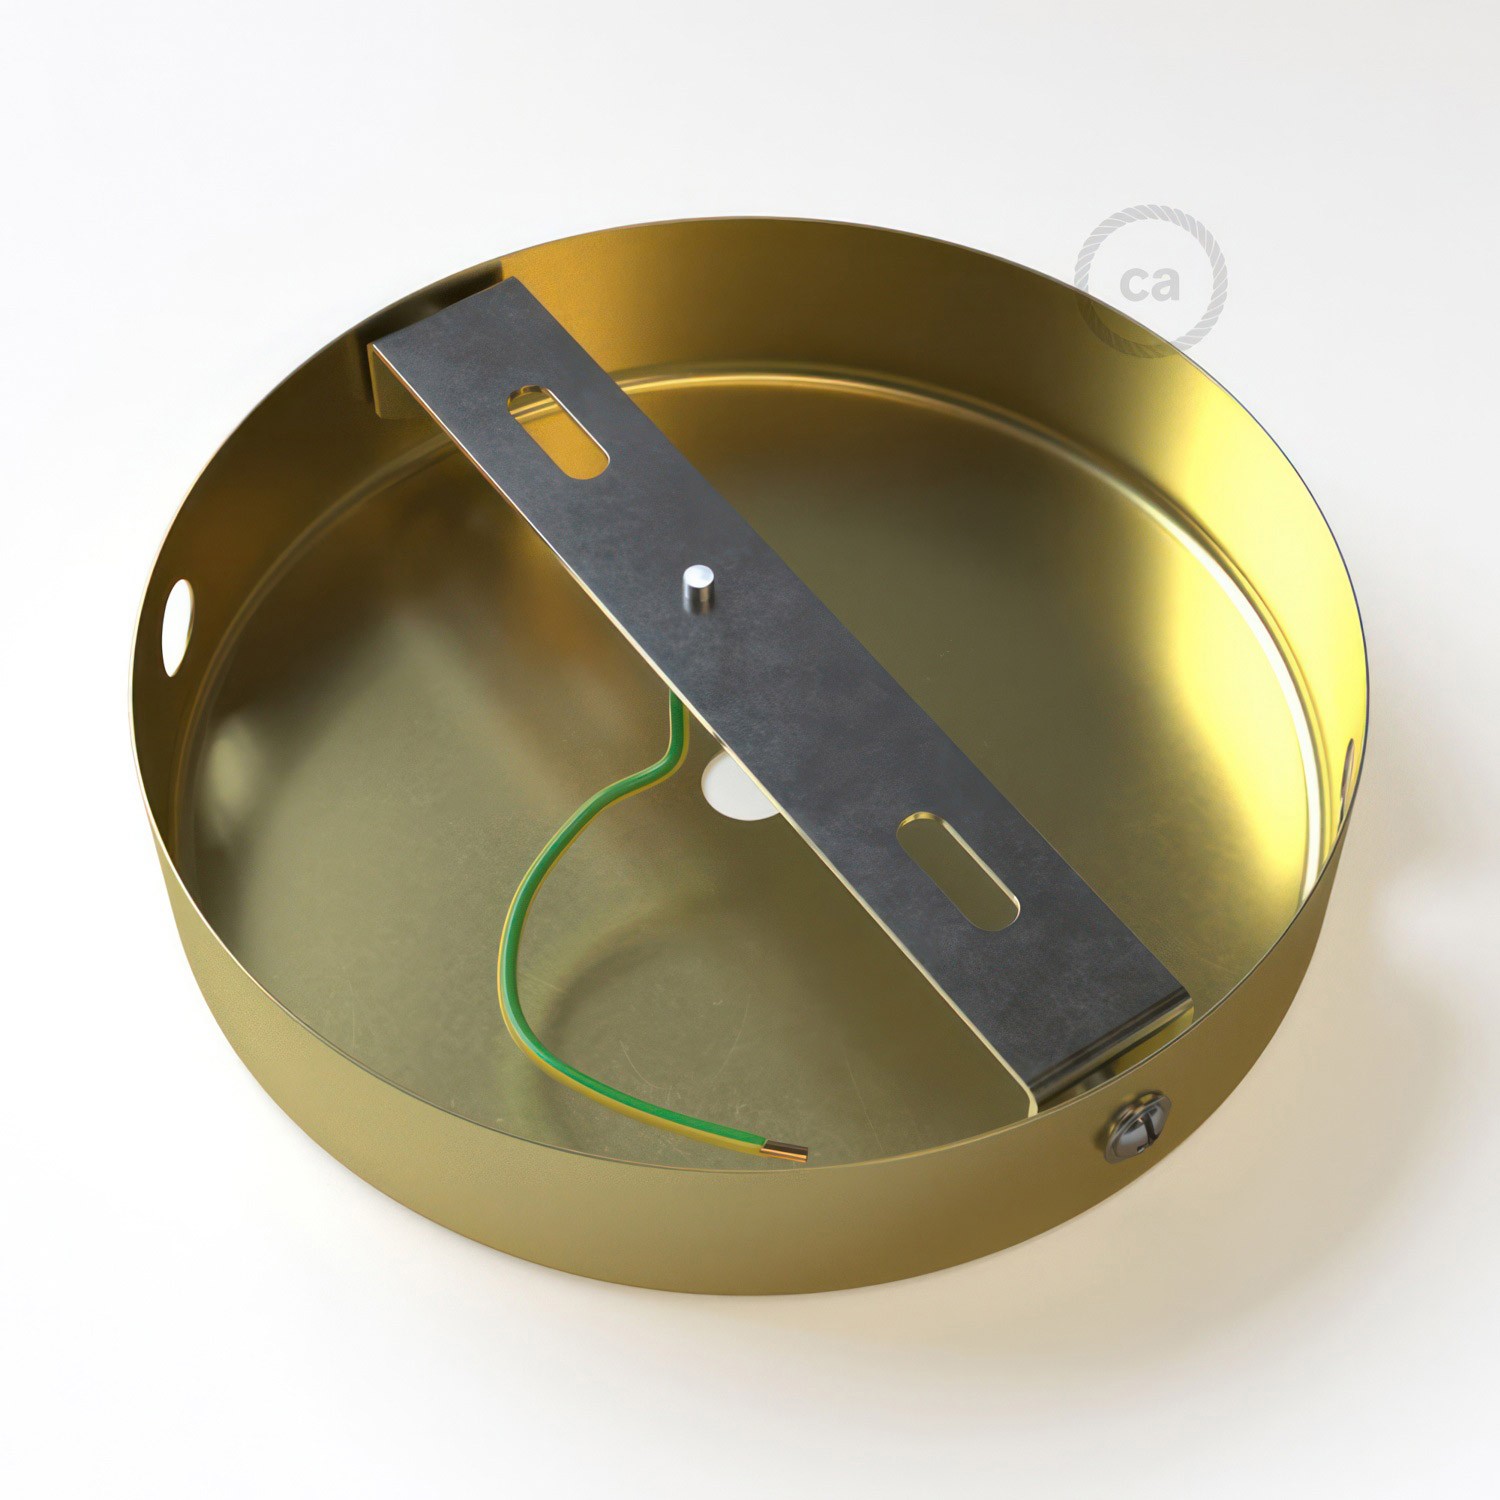 Zylindrischer Lampenbaldachin Kit aus Metall mit 1 Haupt- und 2 Seitenlöchern